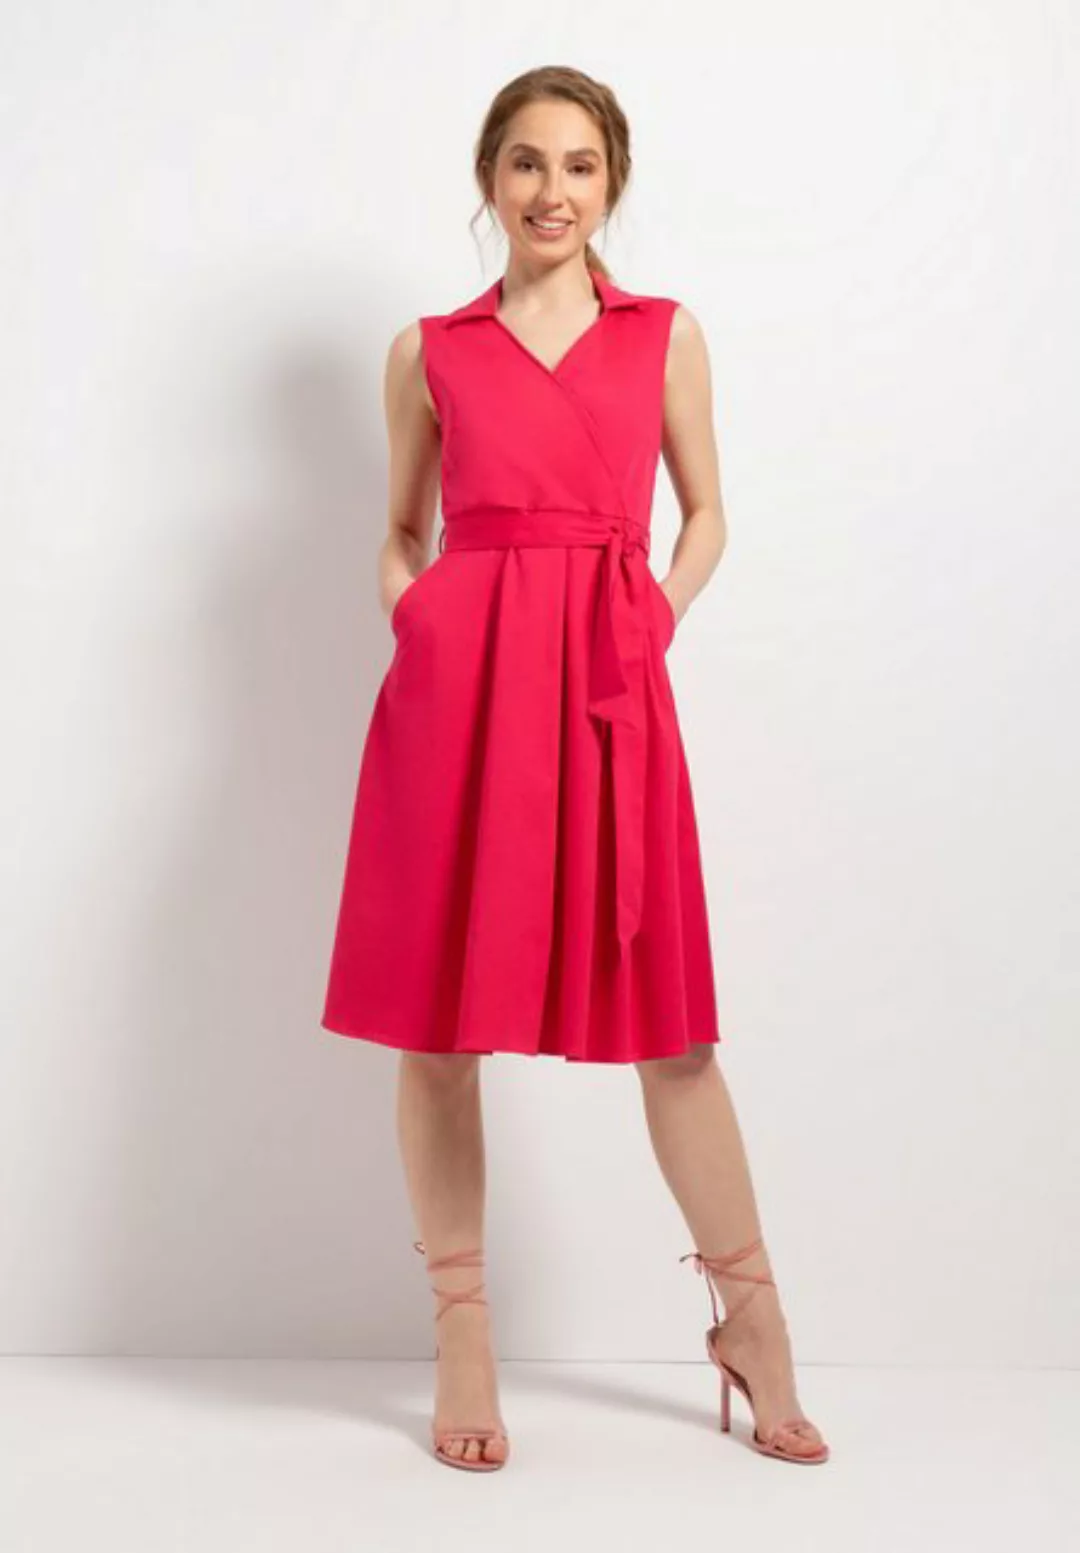 Kleid mit Wickeloptik, rose pink, Sommer-Kollektion günstig online kaufen